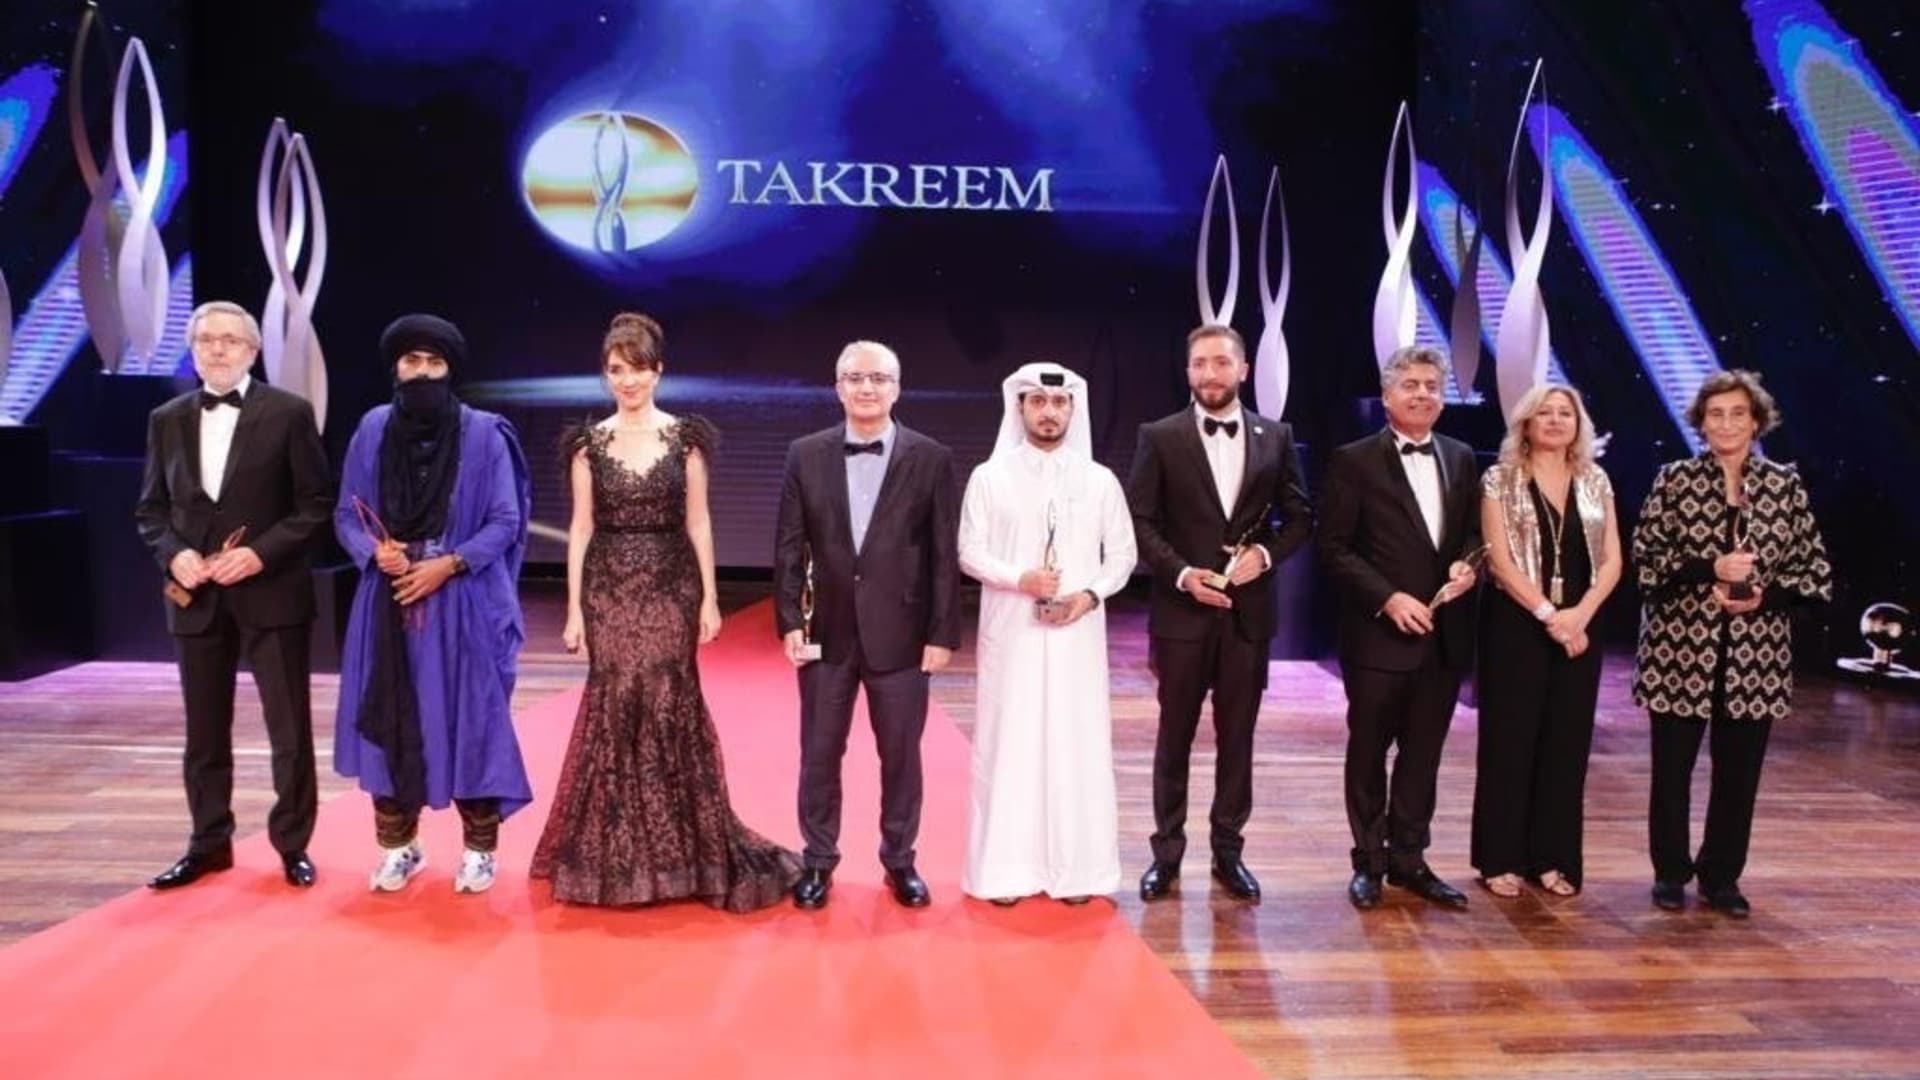 جوائز "تكريم" لعشرة وجوه ومنظمات عربية ملهمة للأجيال اللاحقة